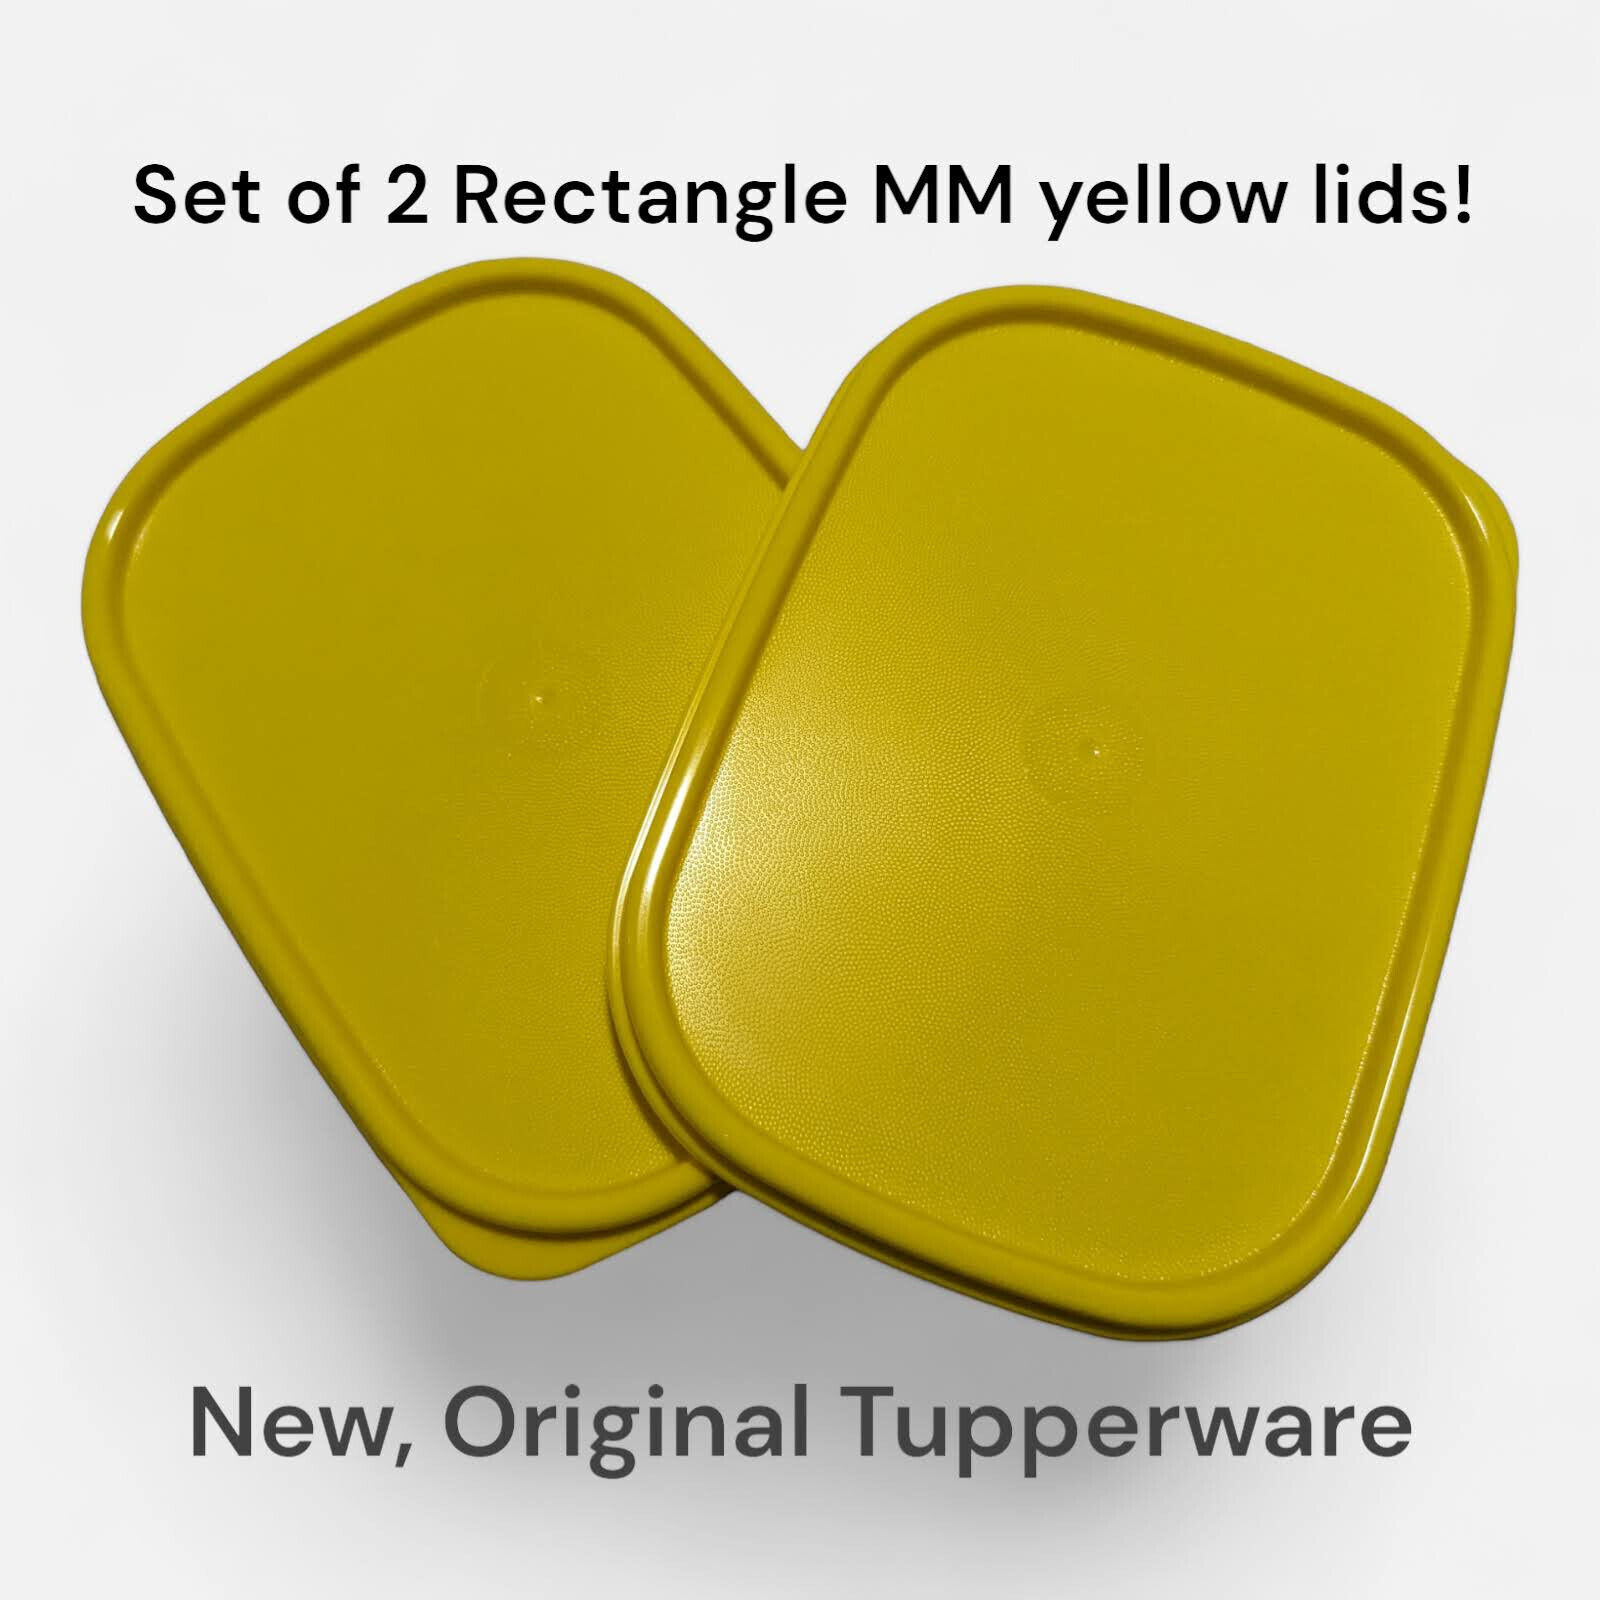 Original Tupperware Modular Mates Yellow Lid Replacement 2 Pcs Rectangle 1793